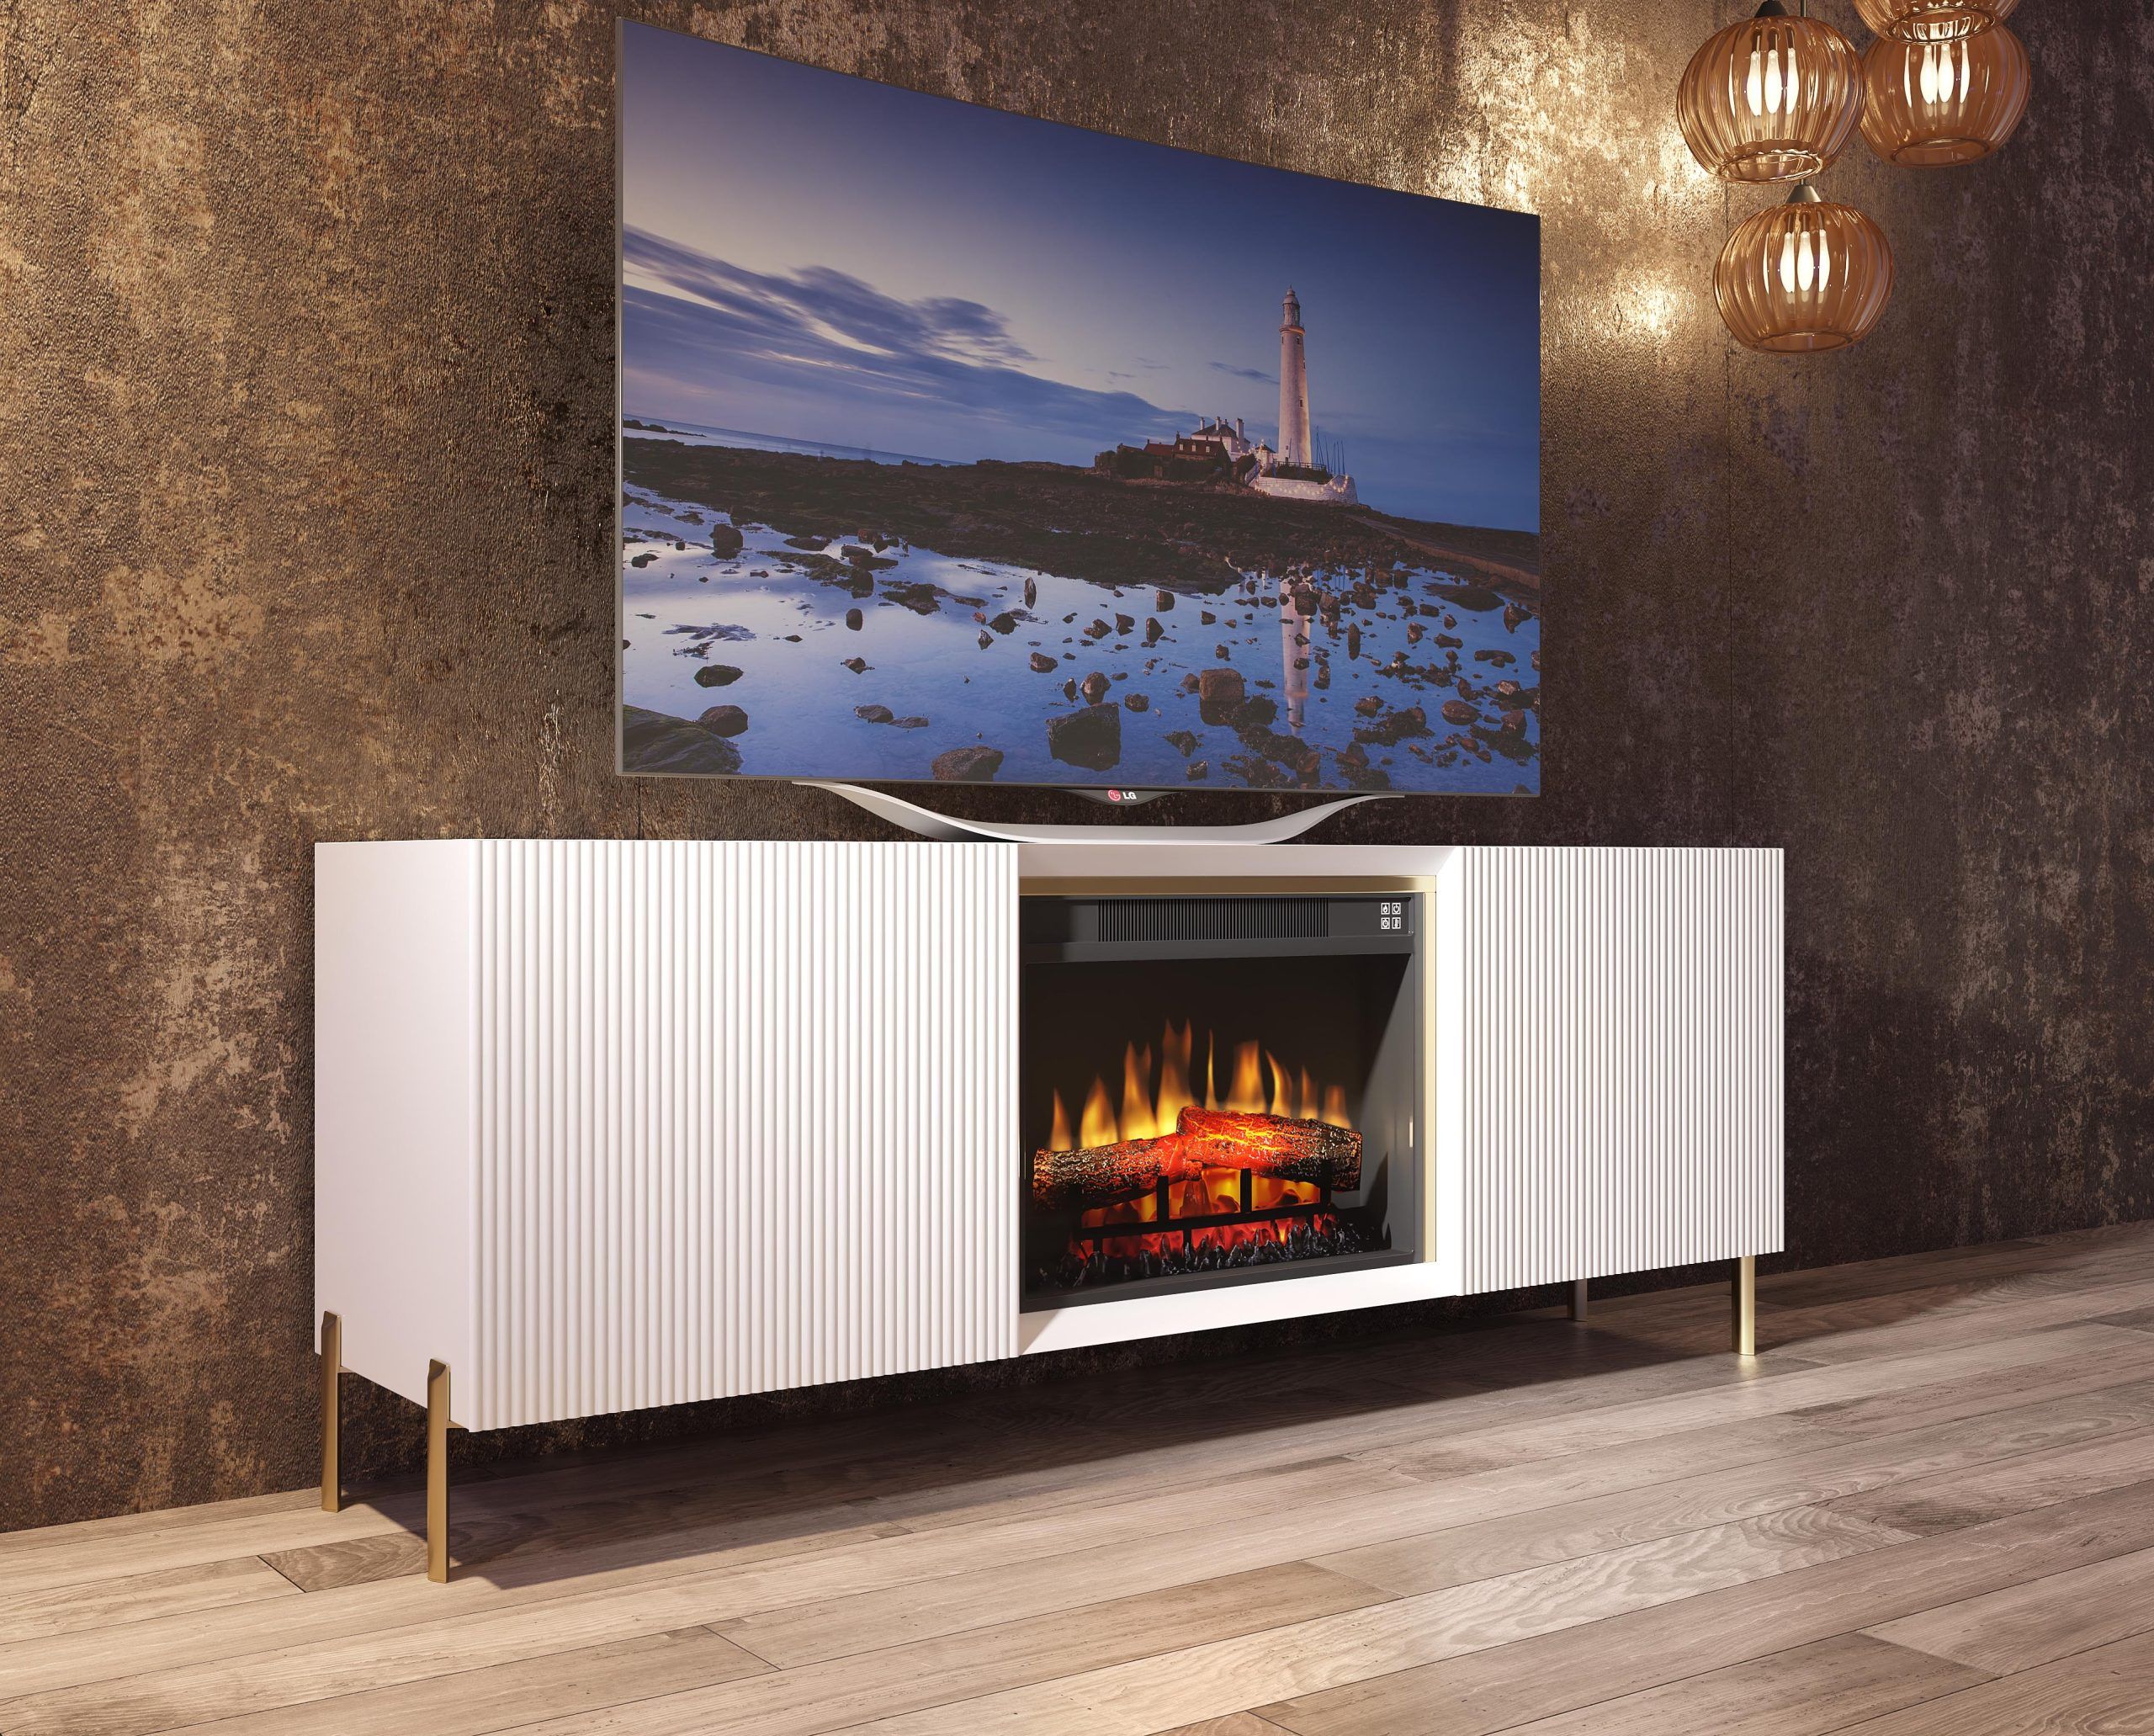 Mueble TV con chimenea CH04 - Franco Furniture